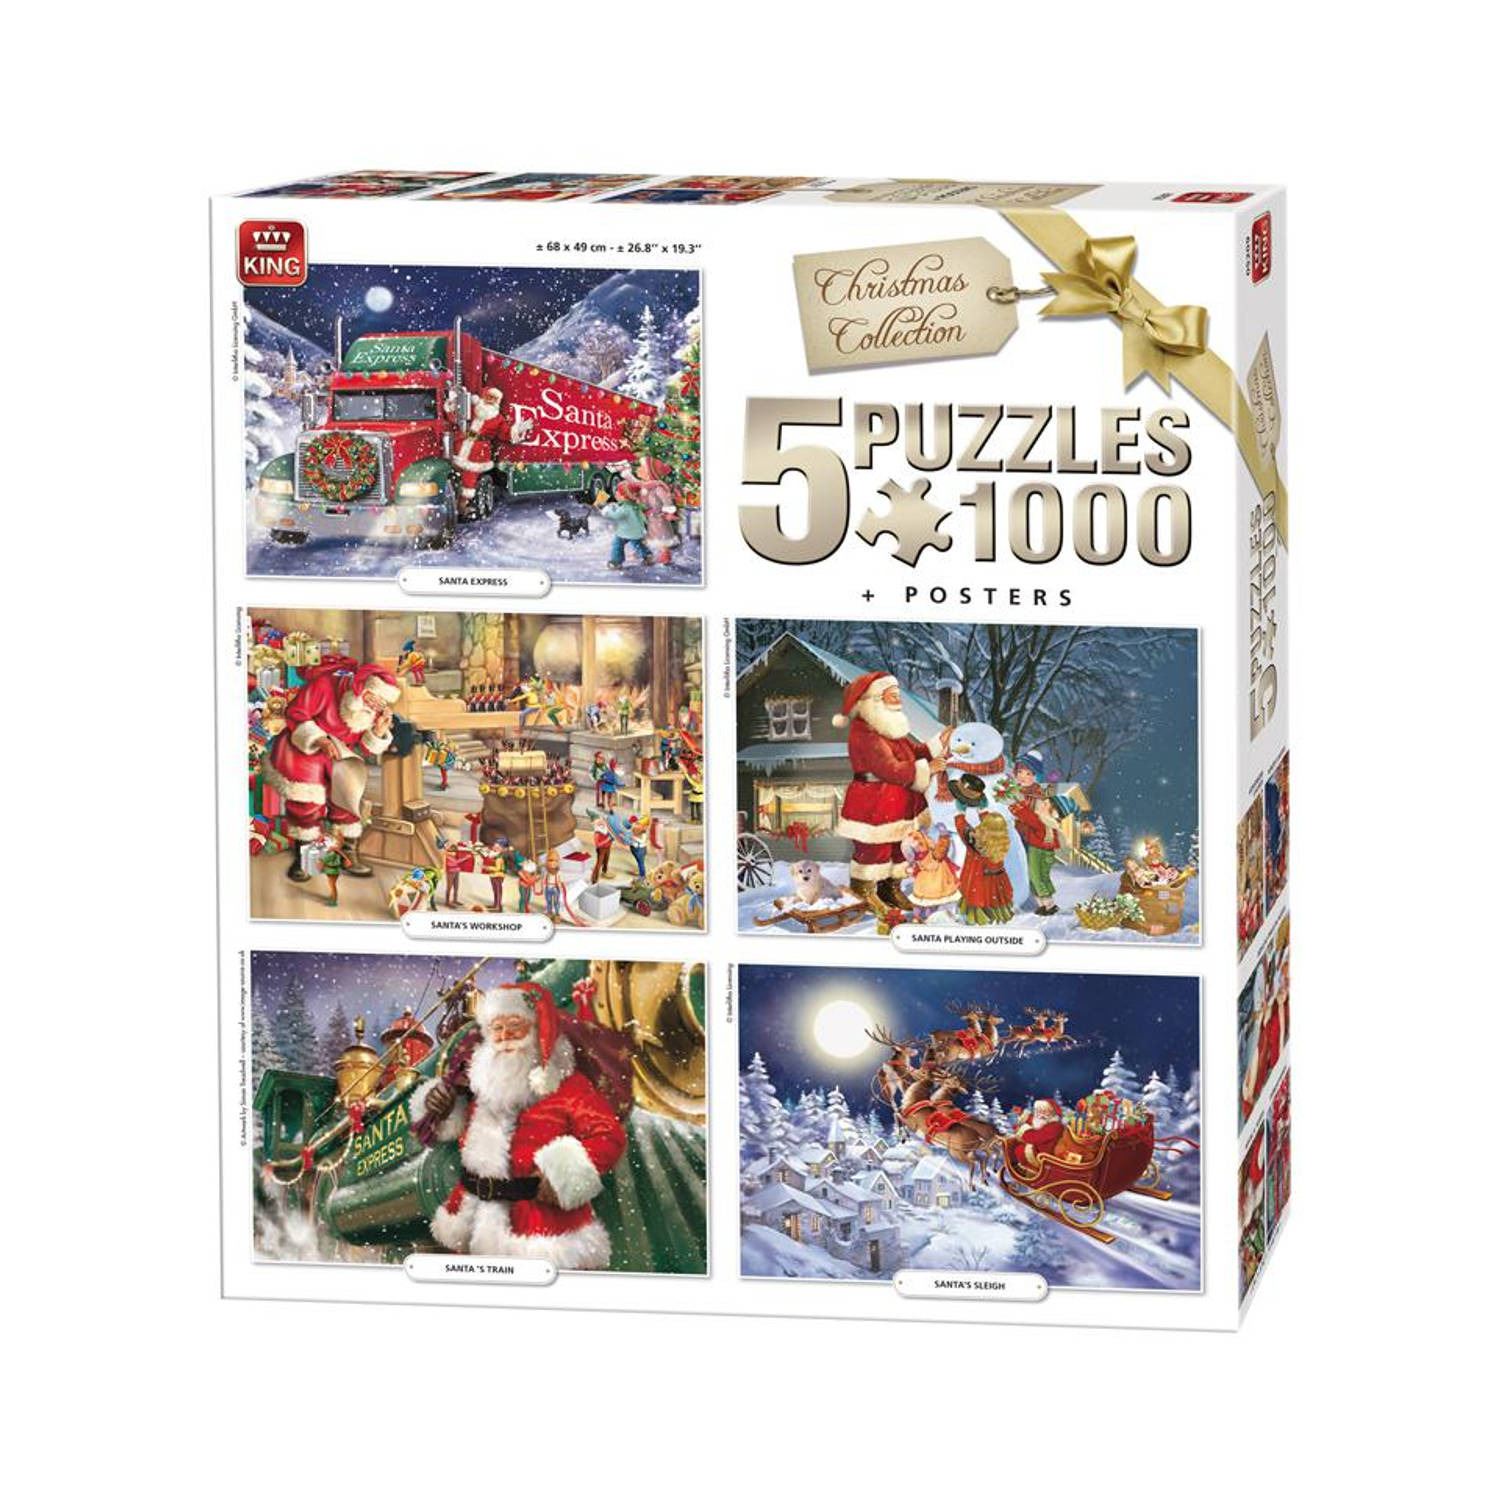 Buitenland Buik Ik was verrast King puzzel Christmas Collection - 5 x 1000 stukjes | Blokker